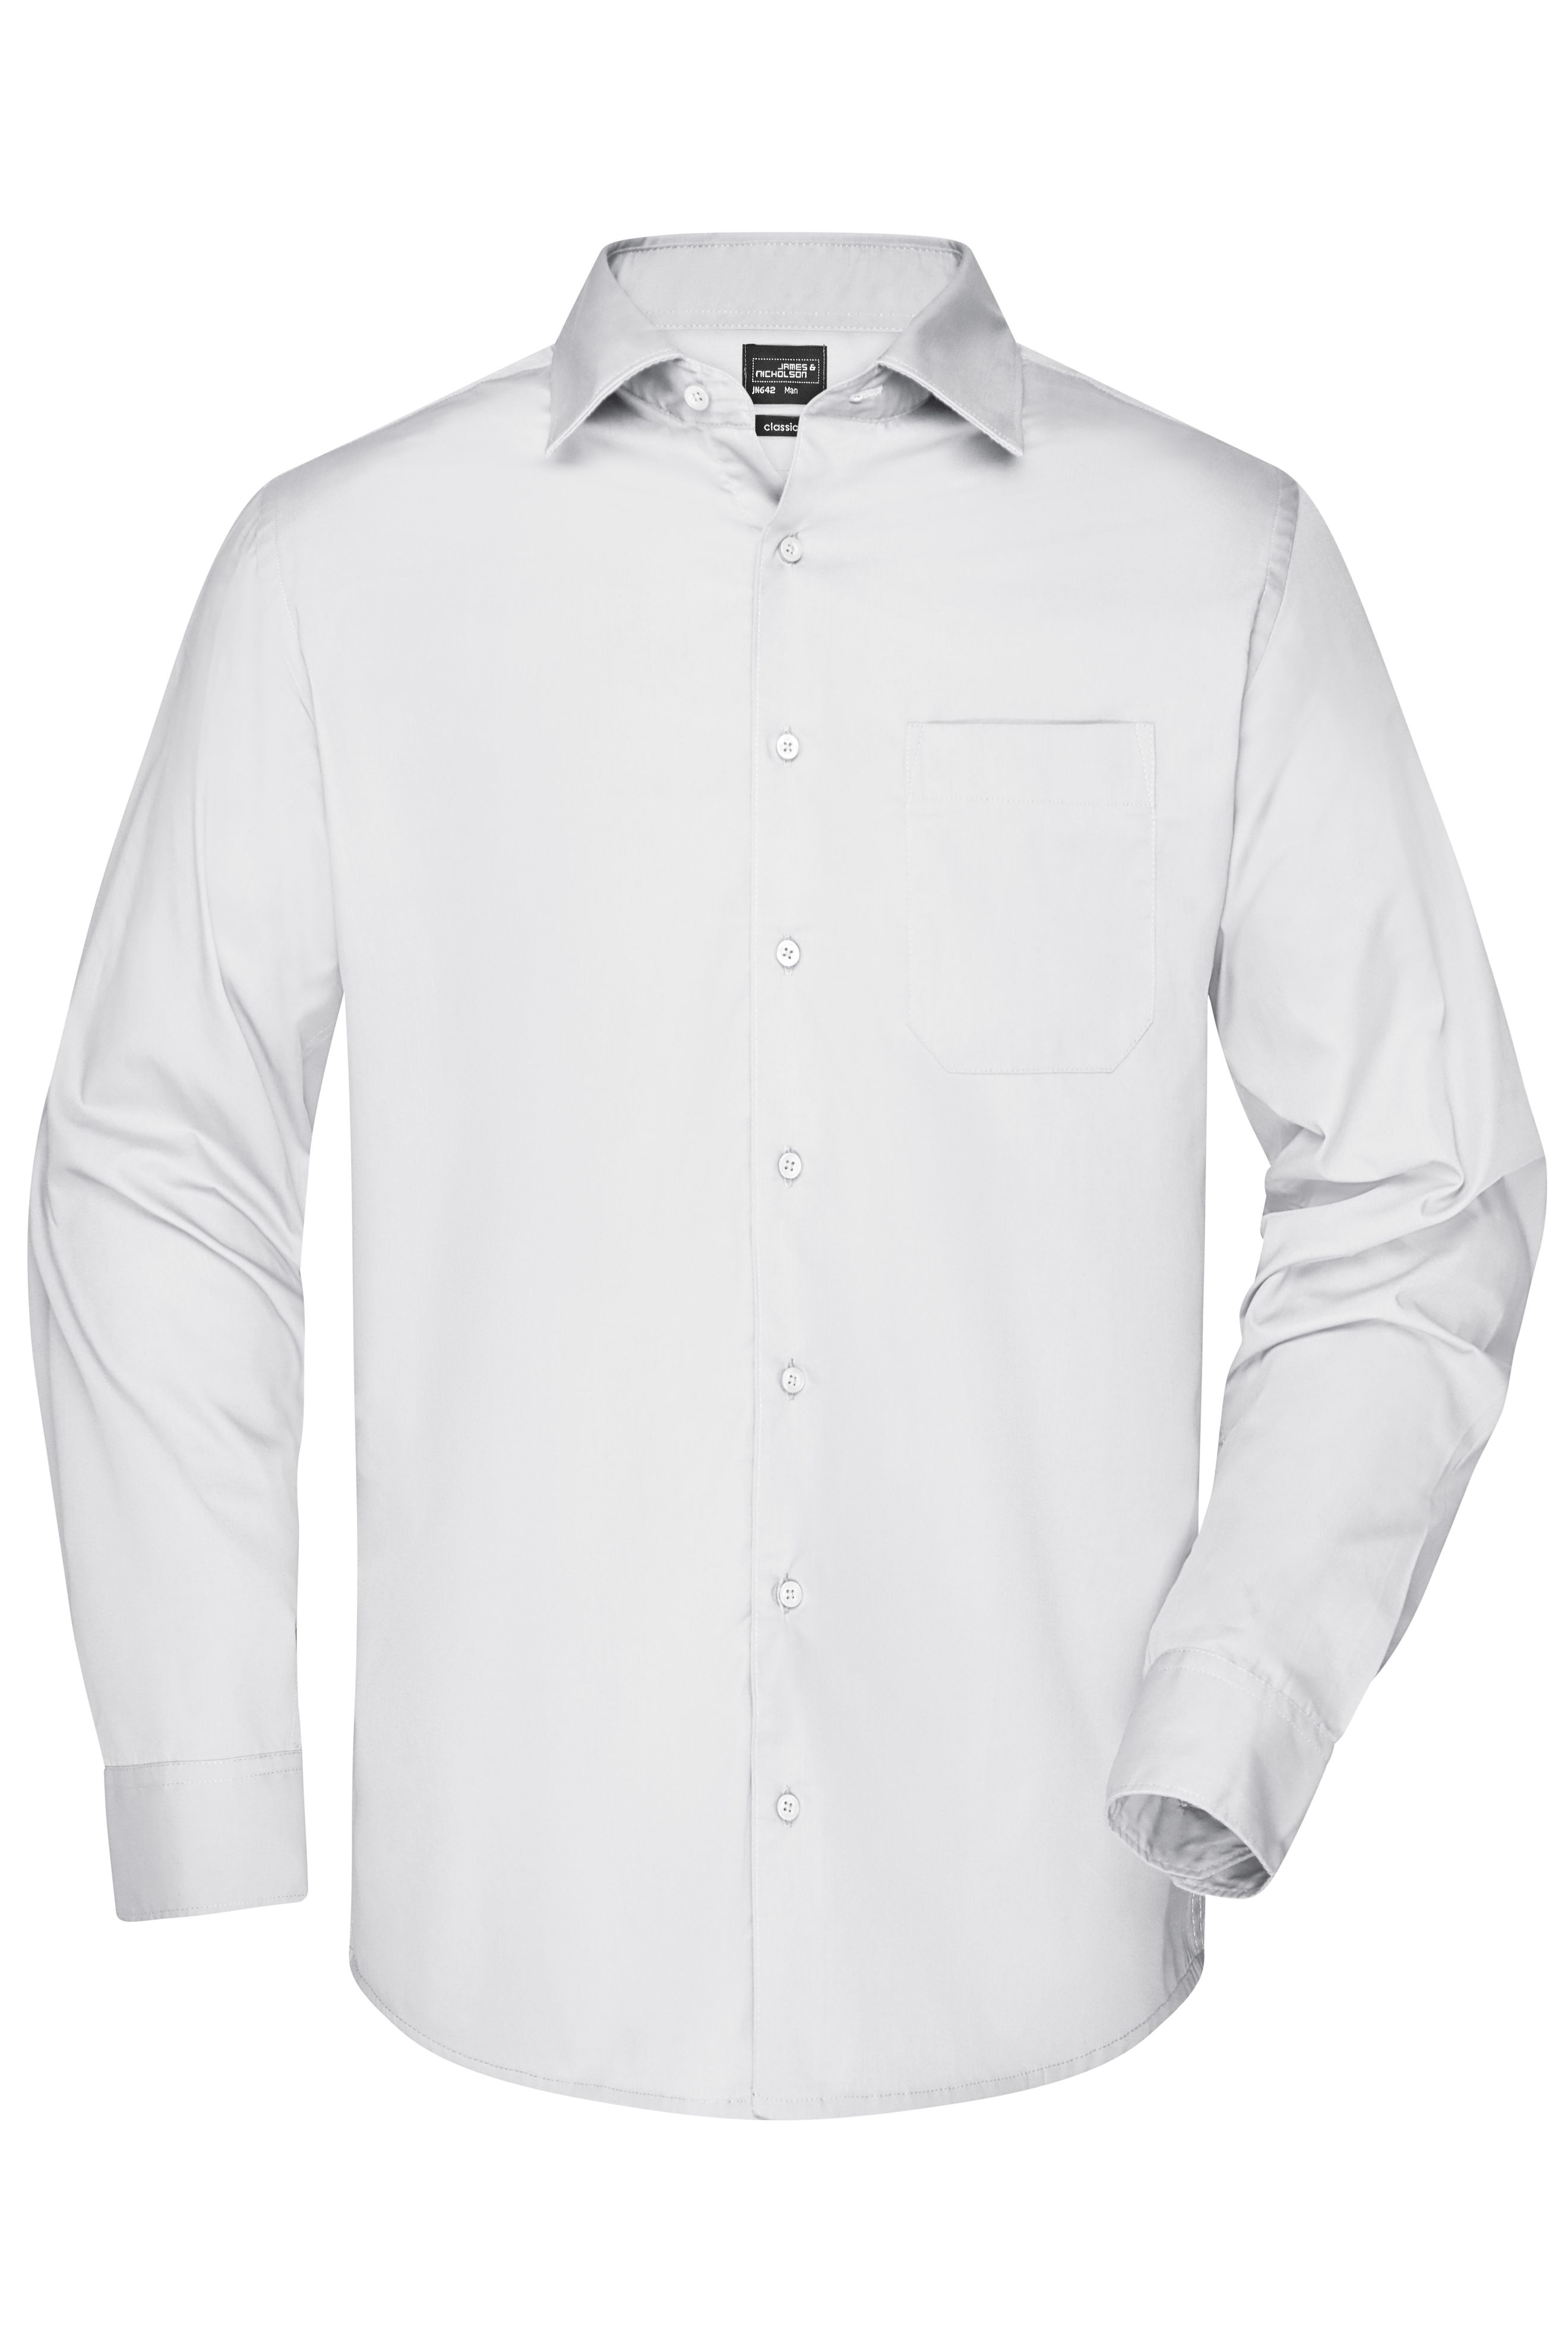 Men's Business Shirt Long-Sleeved JN642 Klassisches Shirt aus strapazierfähigem Mischgewebe